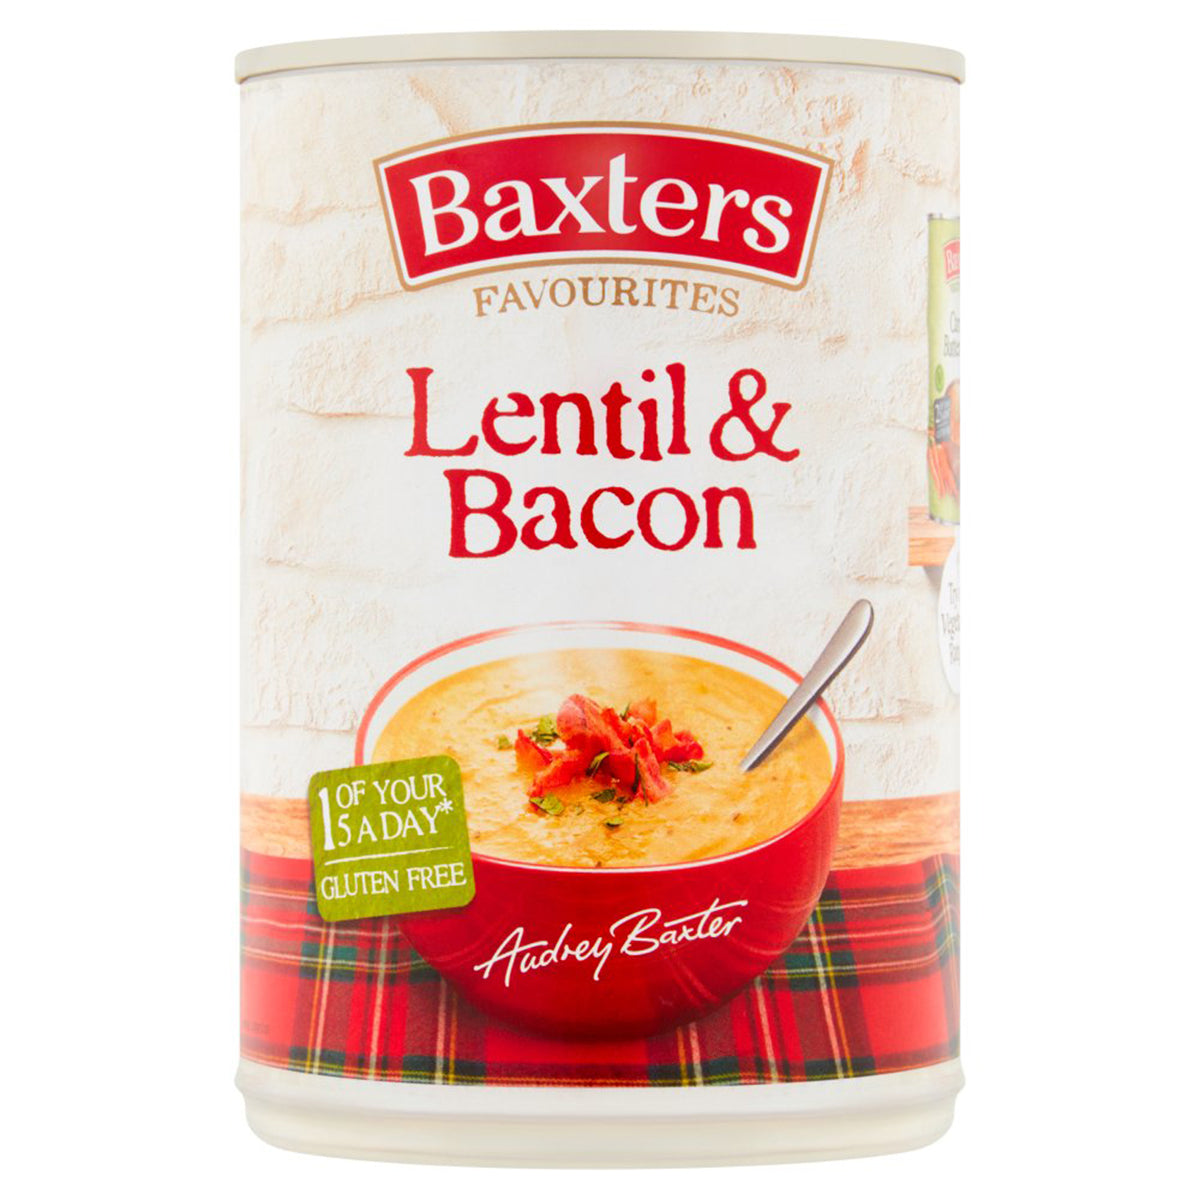 Baxters - Favourites Lentil & Bacon Soup - 400g.